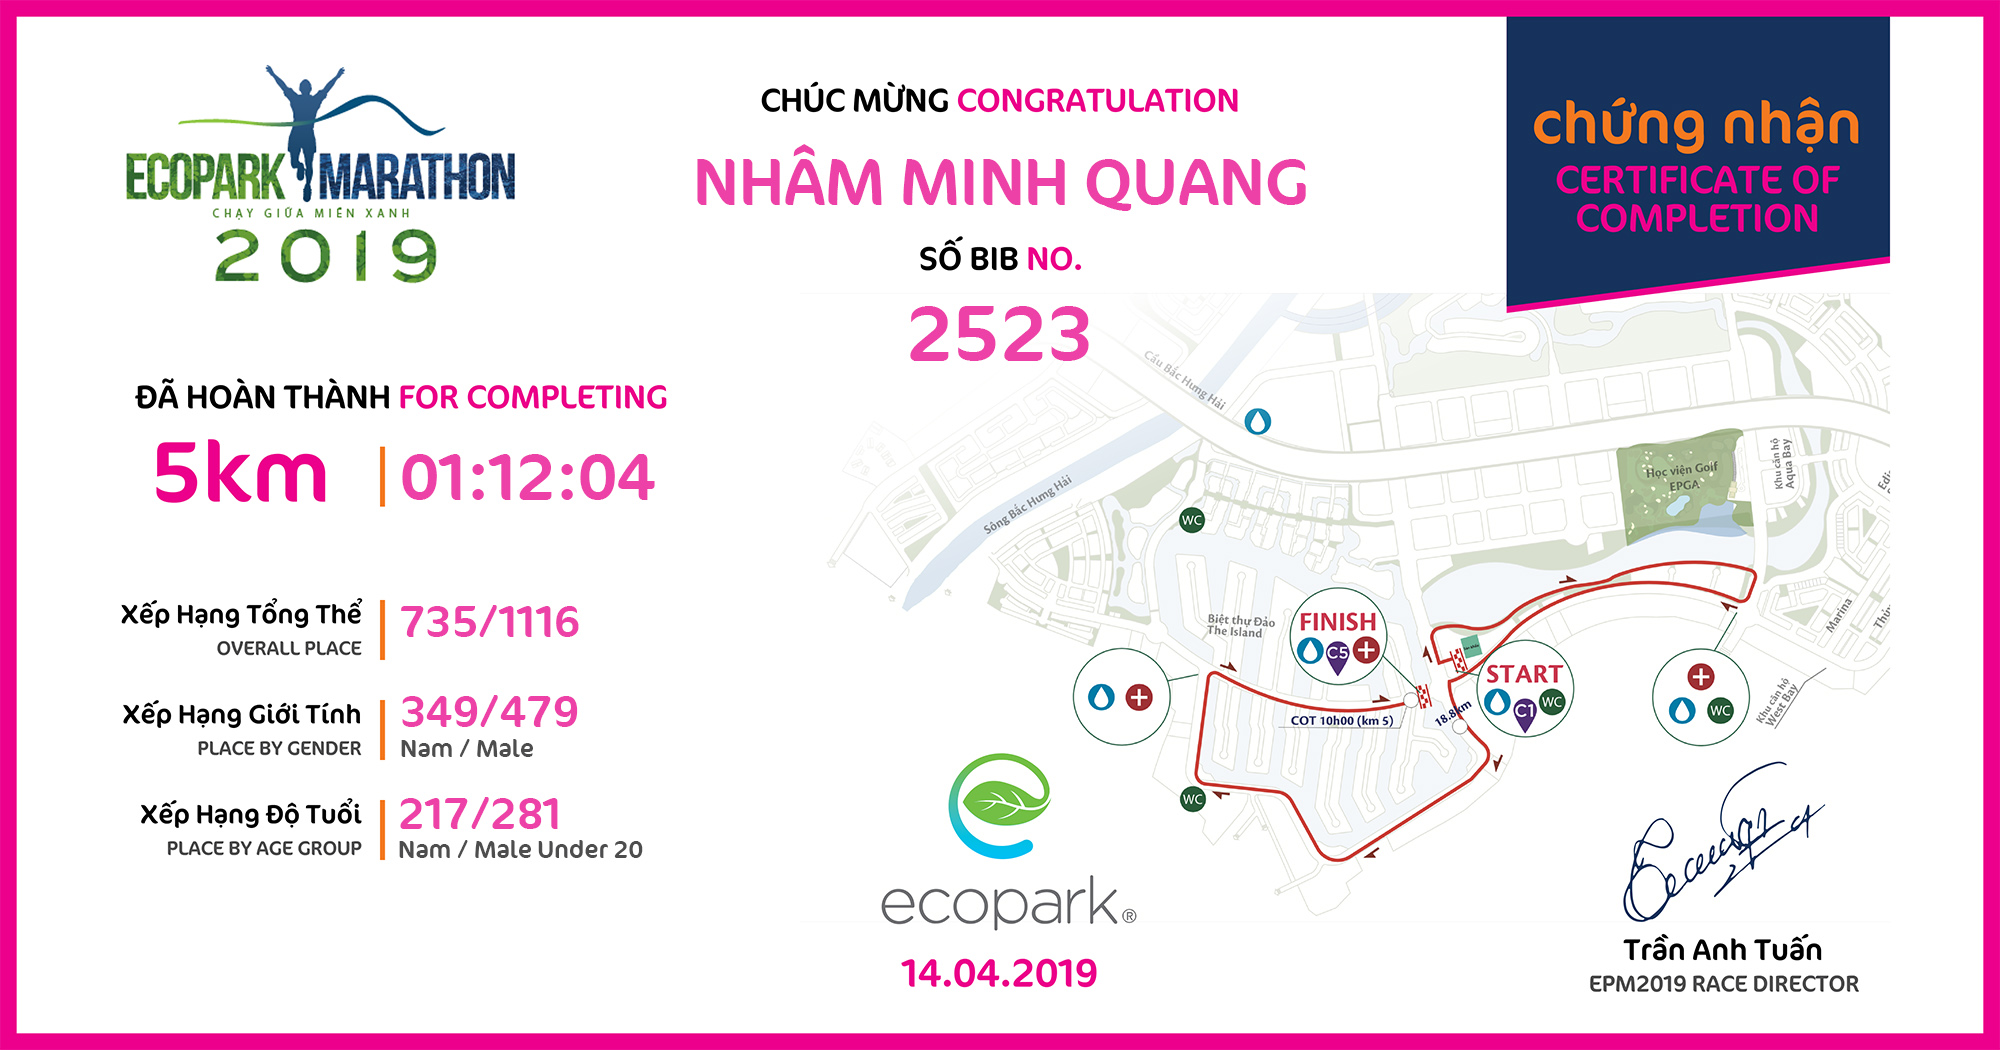 2523 - Nhâm Minh Quang